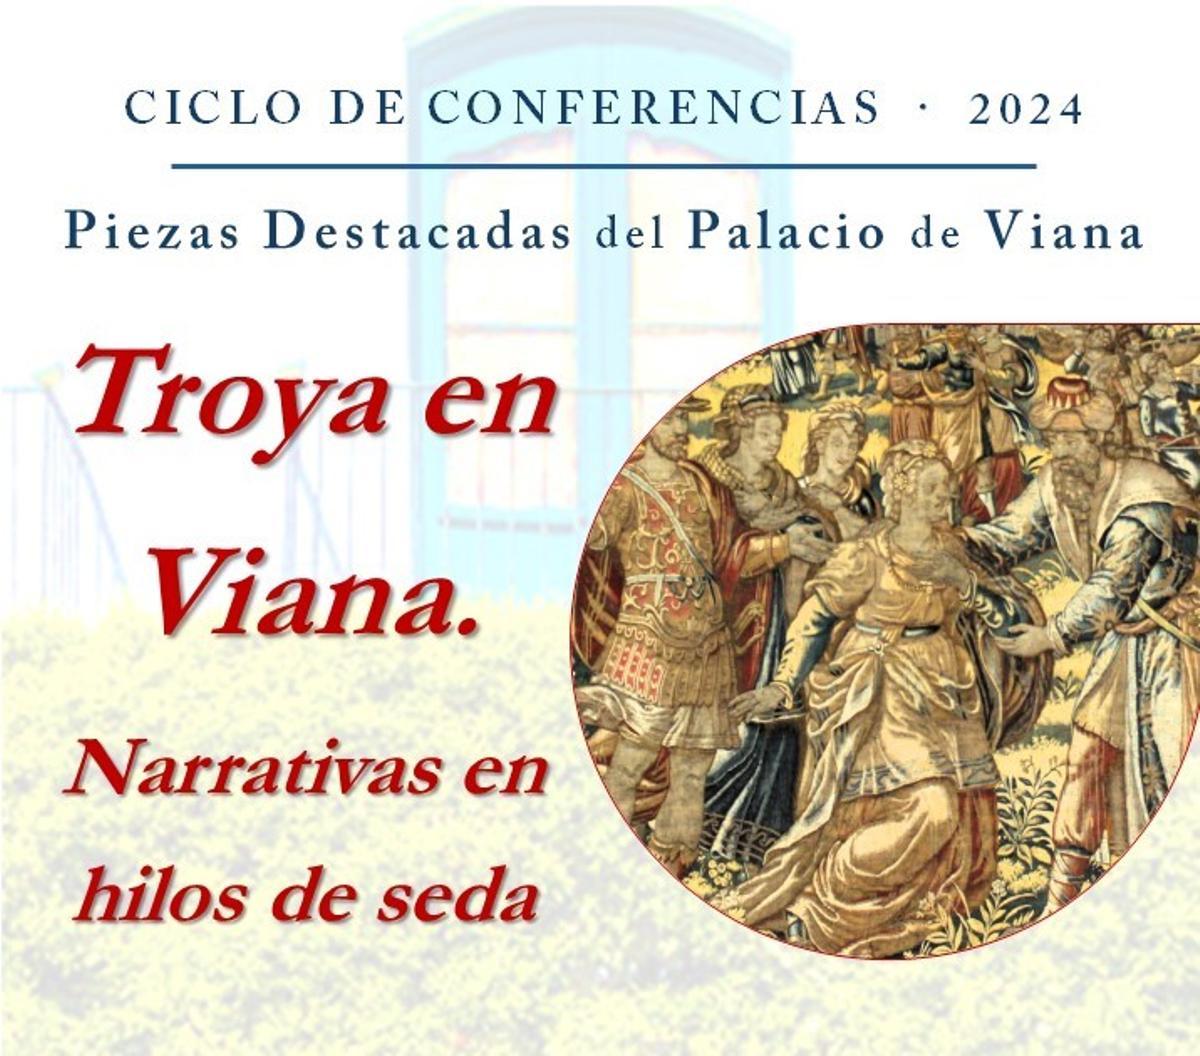 Cartel del ciclo de conferencias del Palacio de Viana.